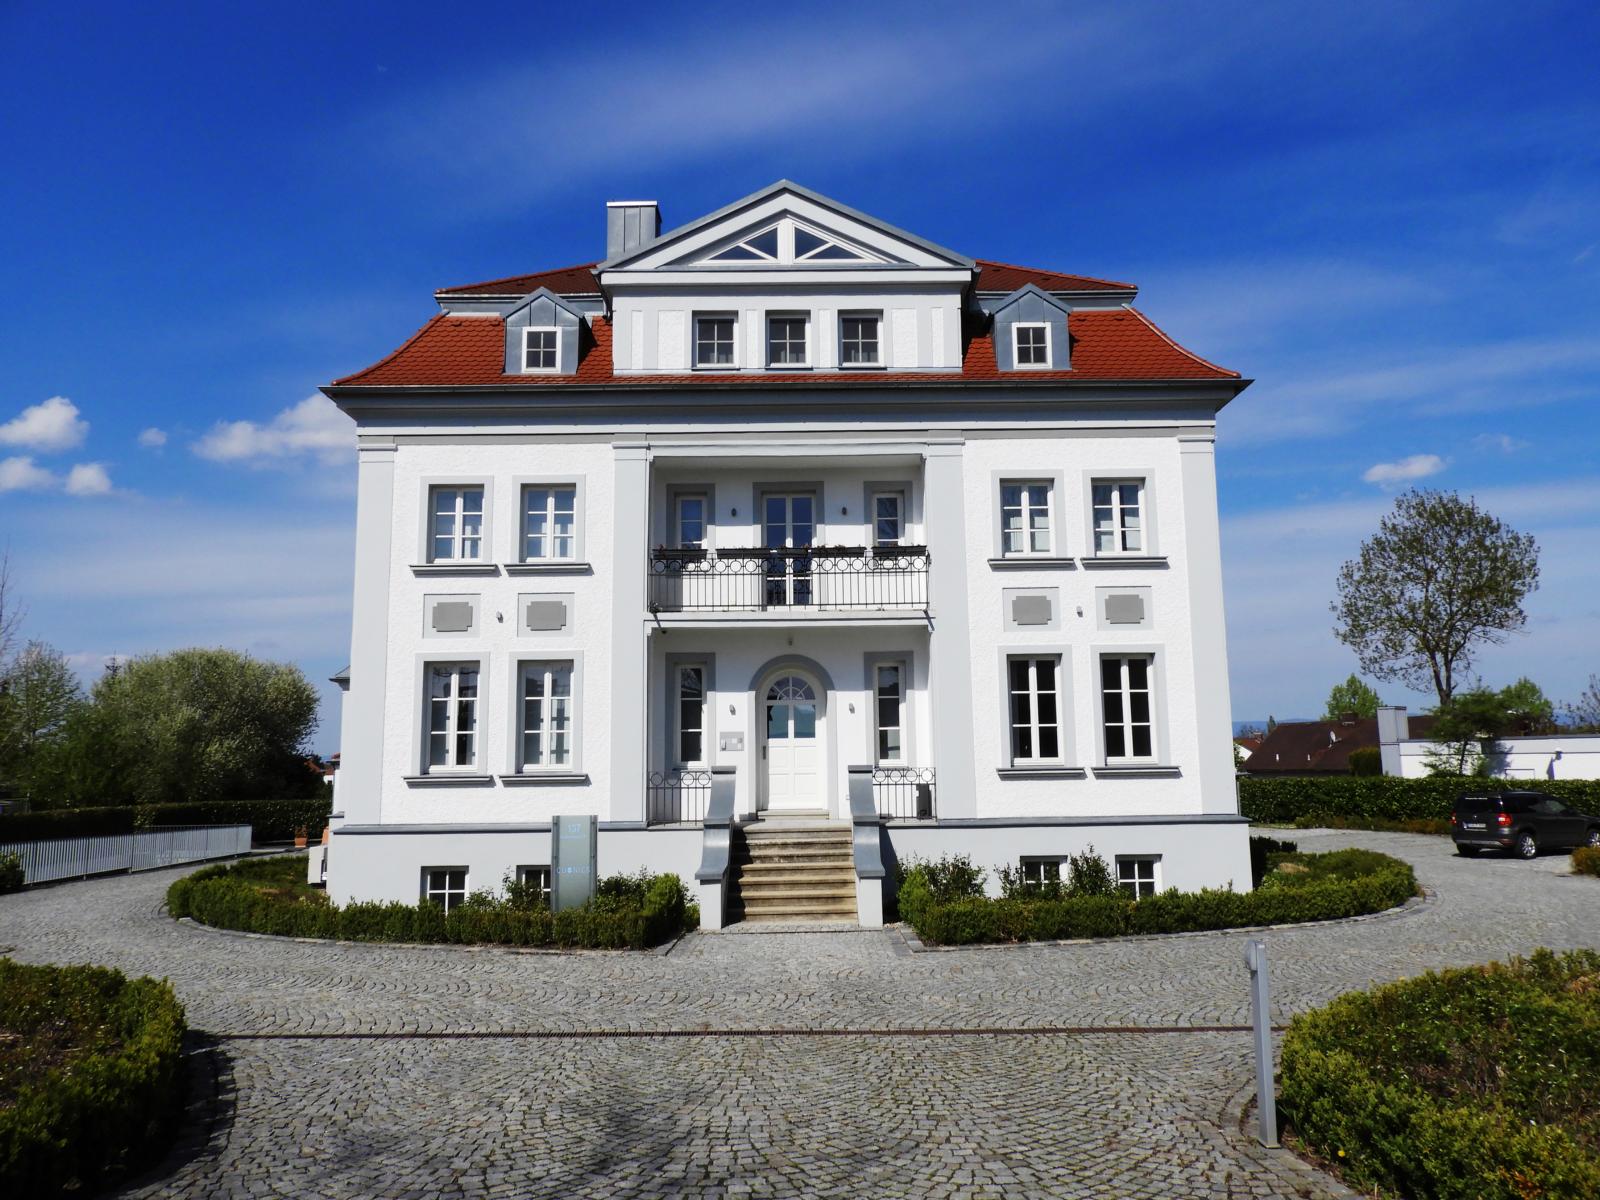 2021 Villa Grieb in Straubing, urspr. 1910 erbaut von Anton Grieb, heute in Privatbesitz
                Foto: Johann Hermann